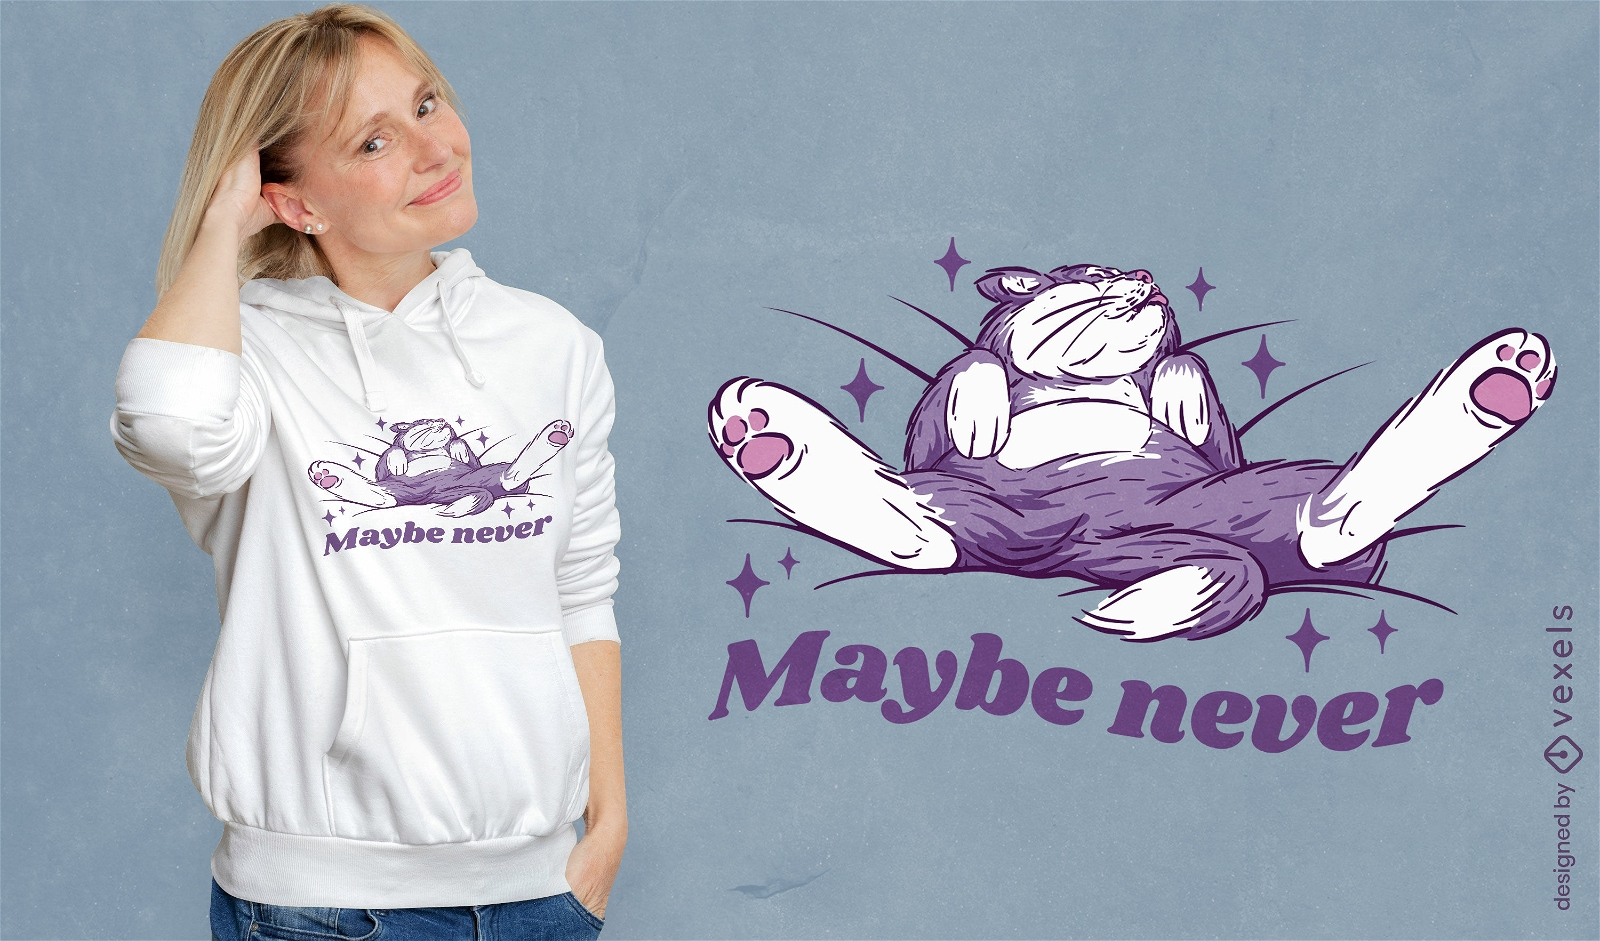 Vielleicht nie faules Katzen-T-Shirt-Design